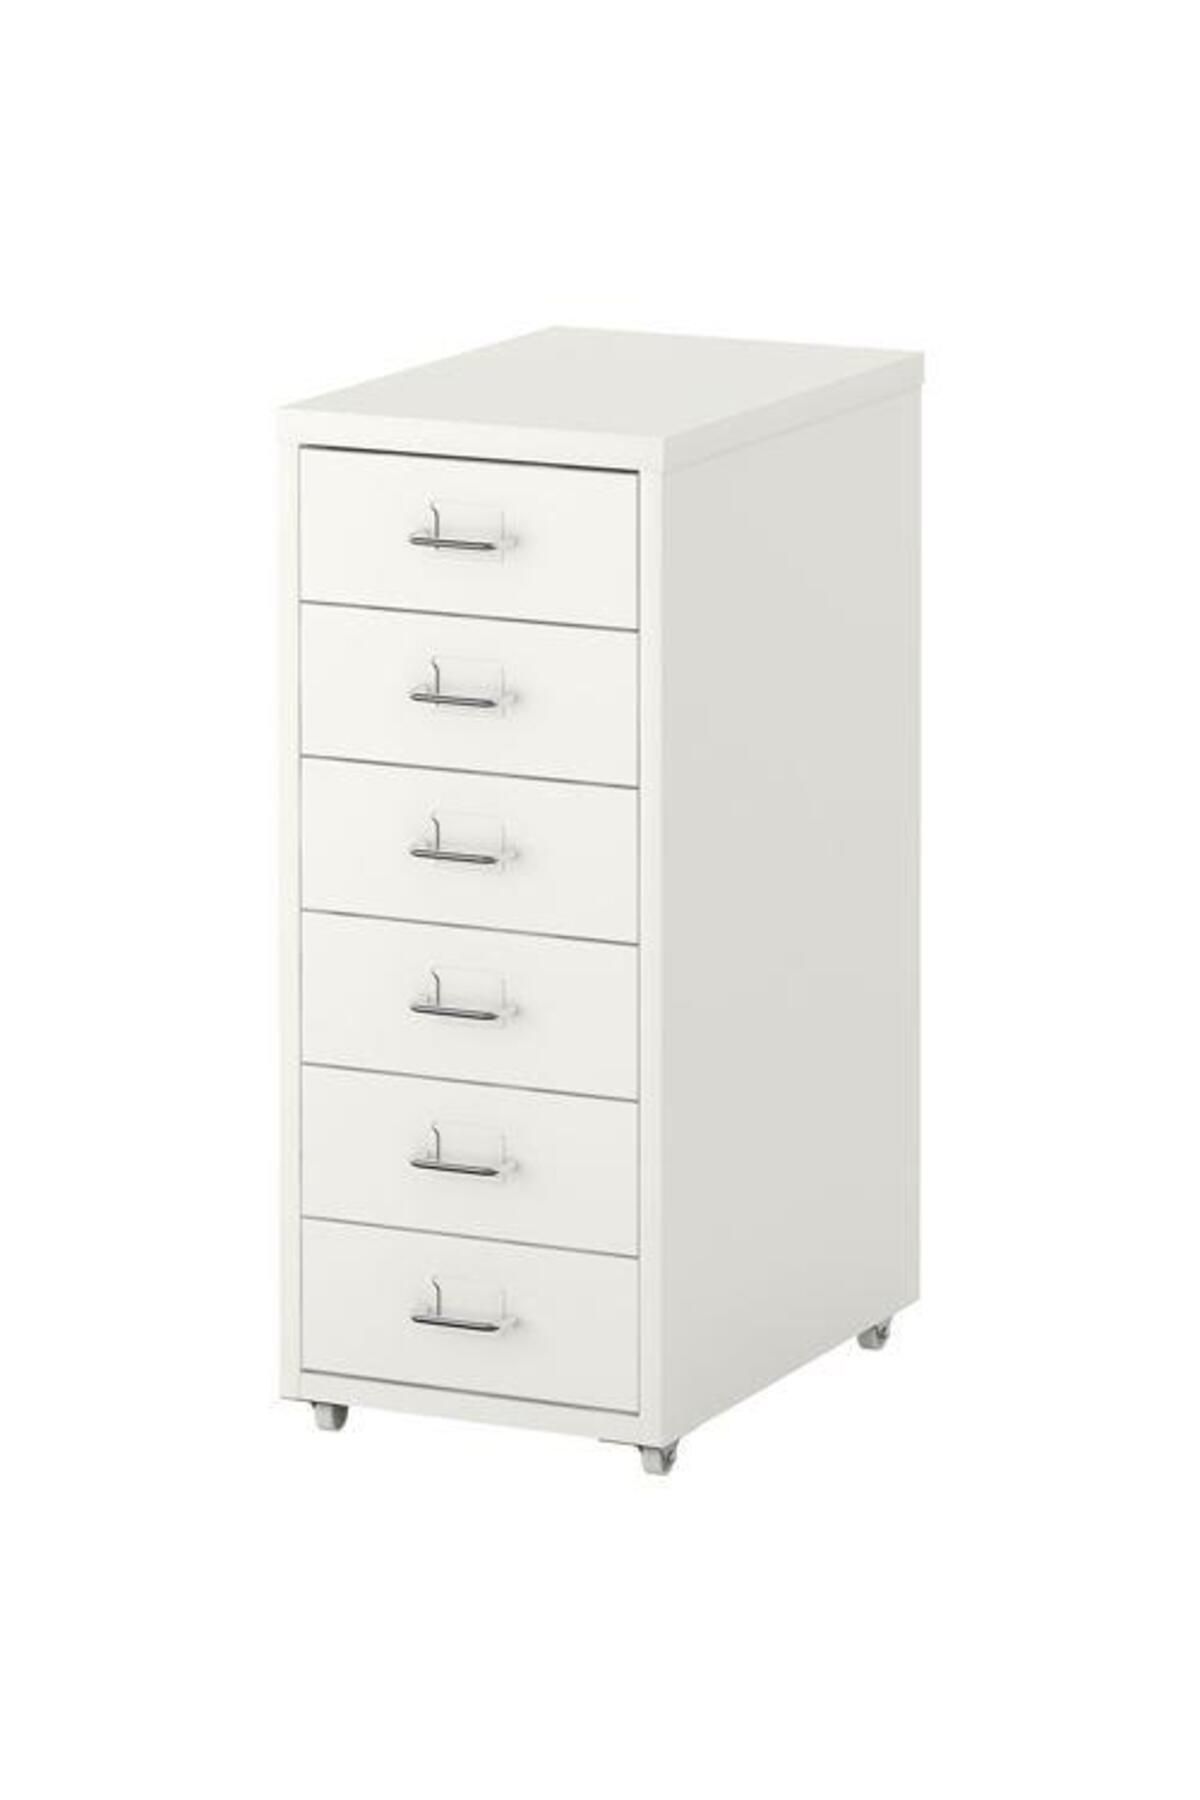 IKEA 6 Çekmeceli Ofis-makyaj-eşya Düzenleyici Meridyendukkan Keson Beyaz Renk 28x69 Cm Tekerlekli